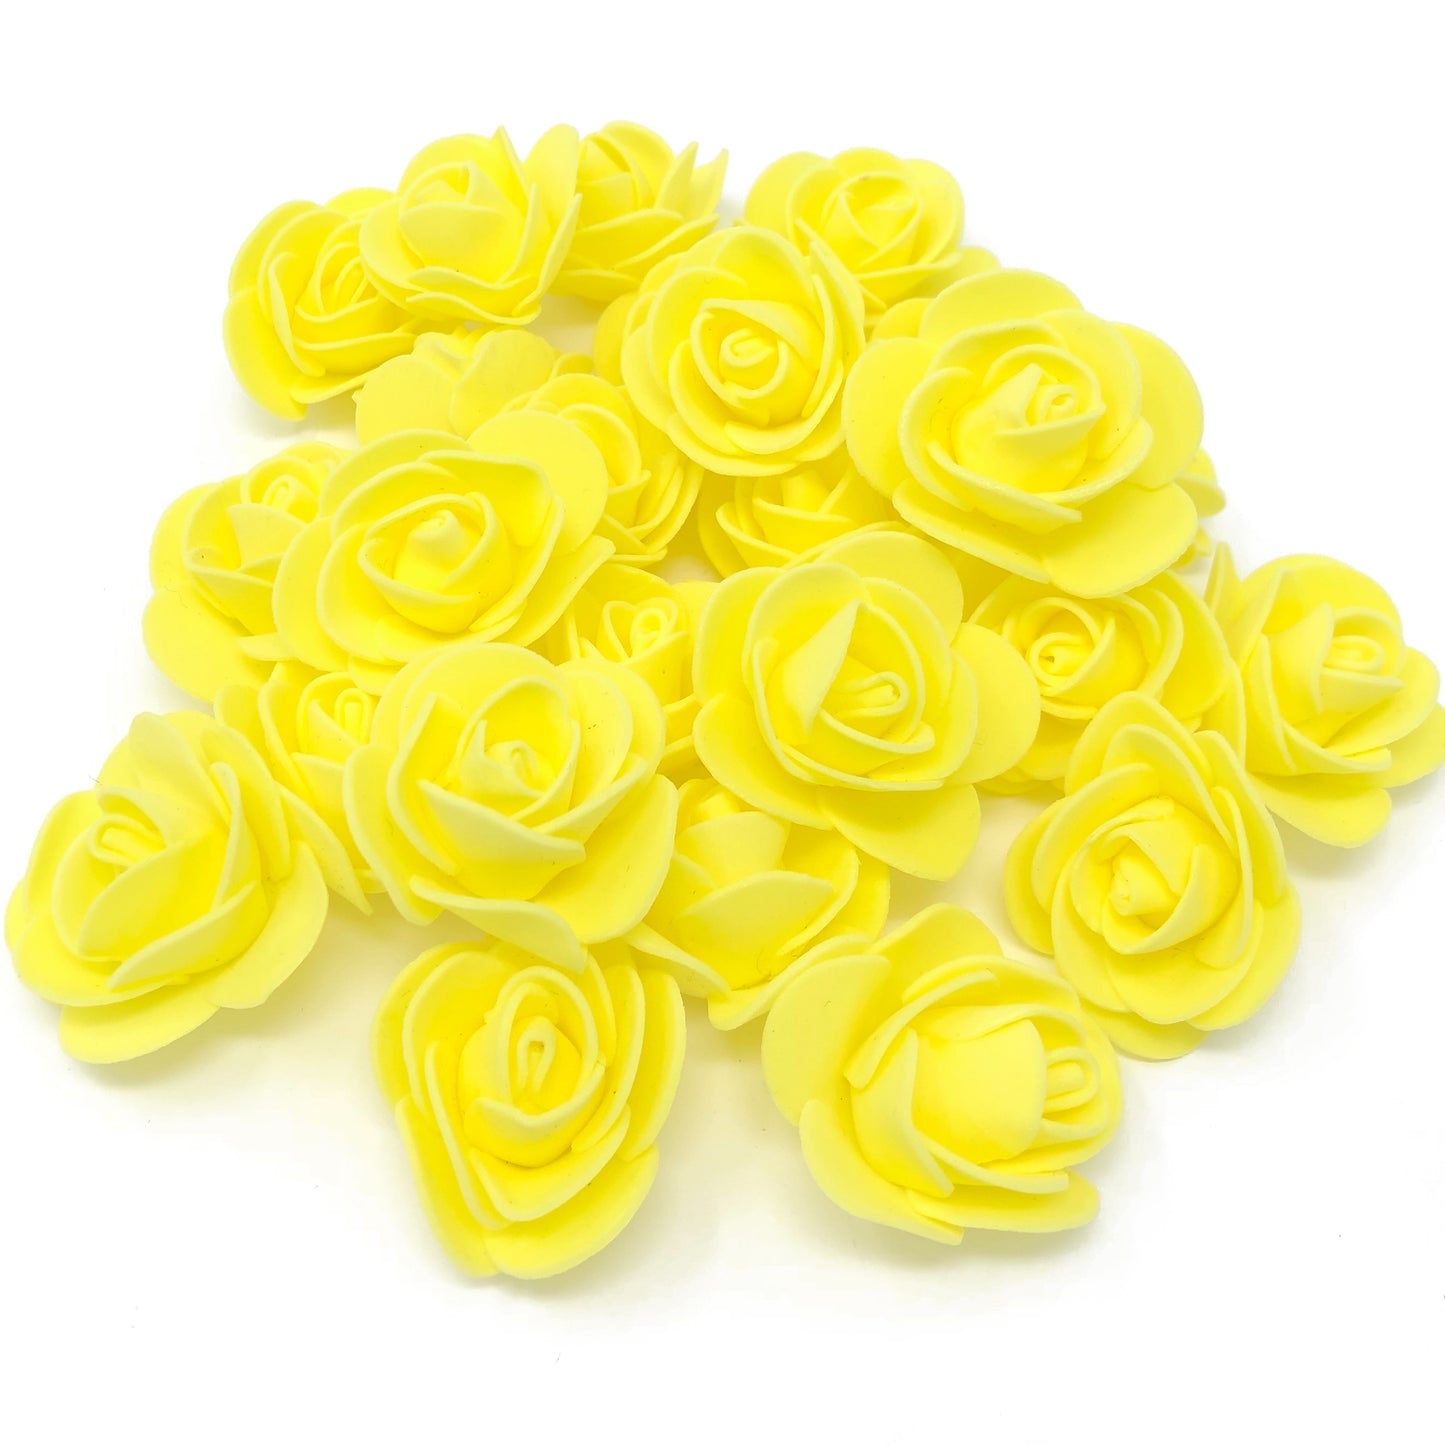 Yellow 30mm Foam Rose Flowers